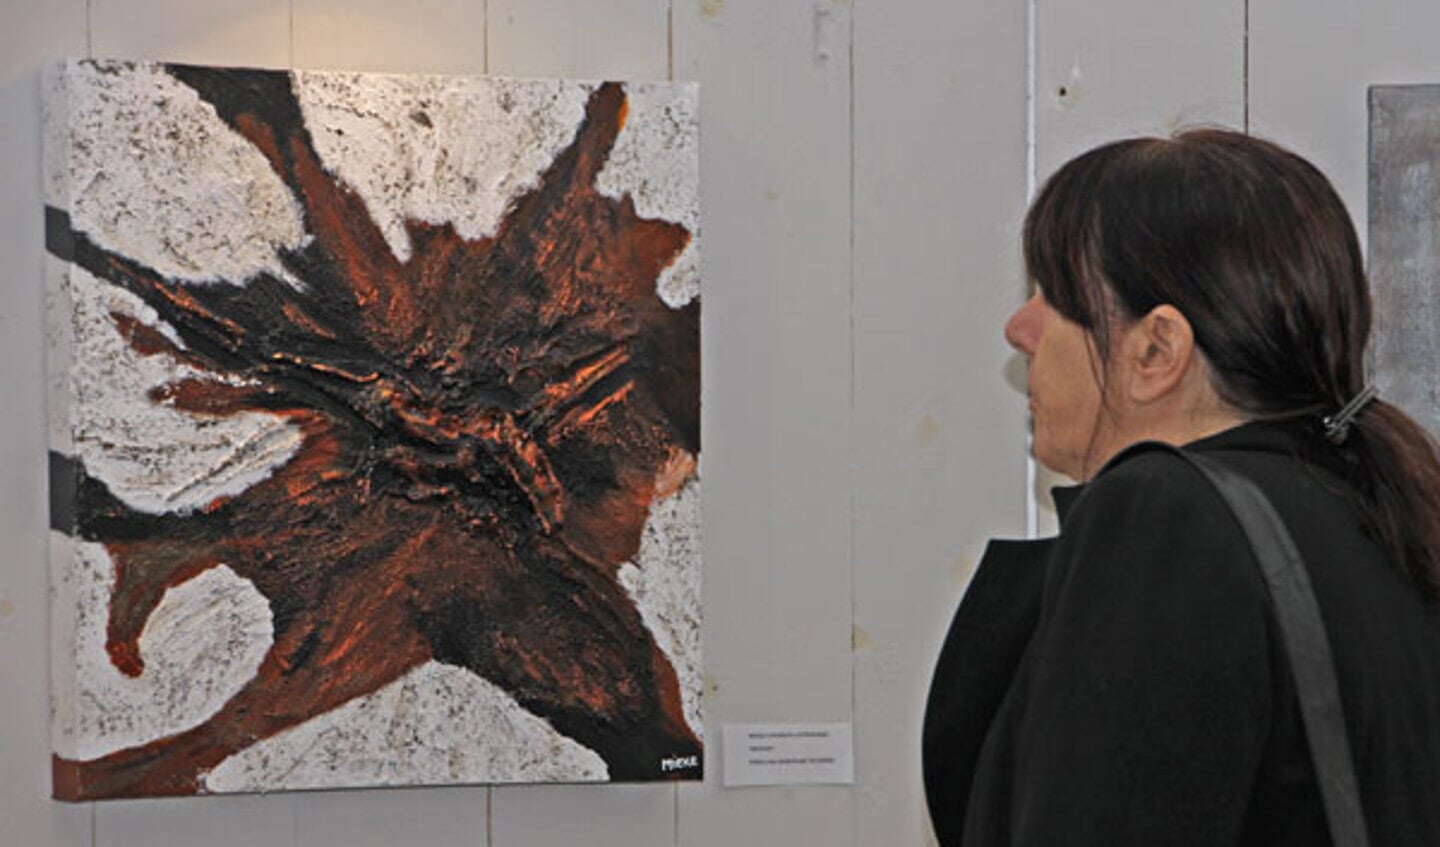 Kunst kijken in Princenhage tijdens de jaarlijkse kunstroute. foto Jorgen Janssens